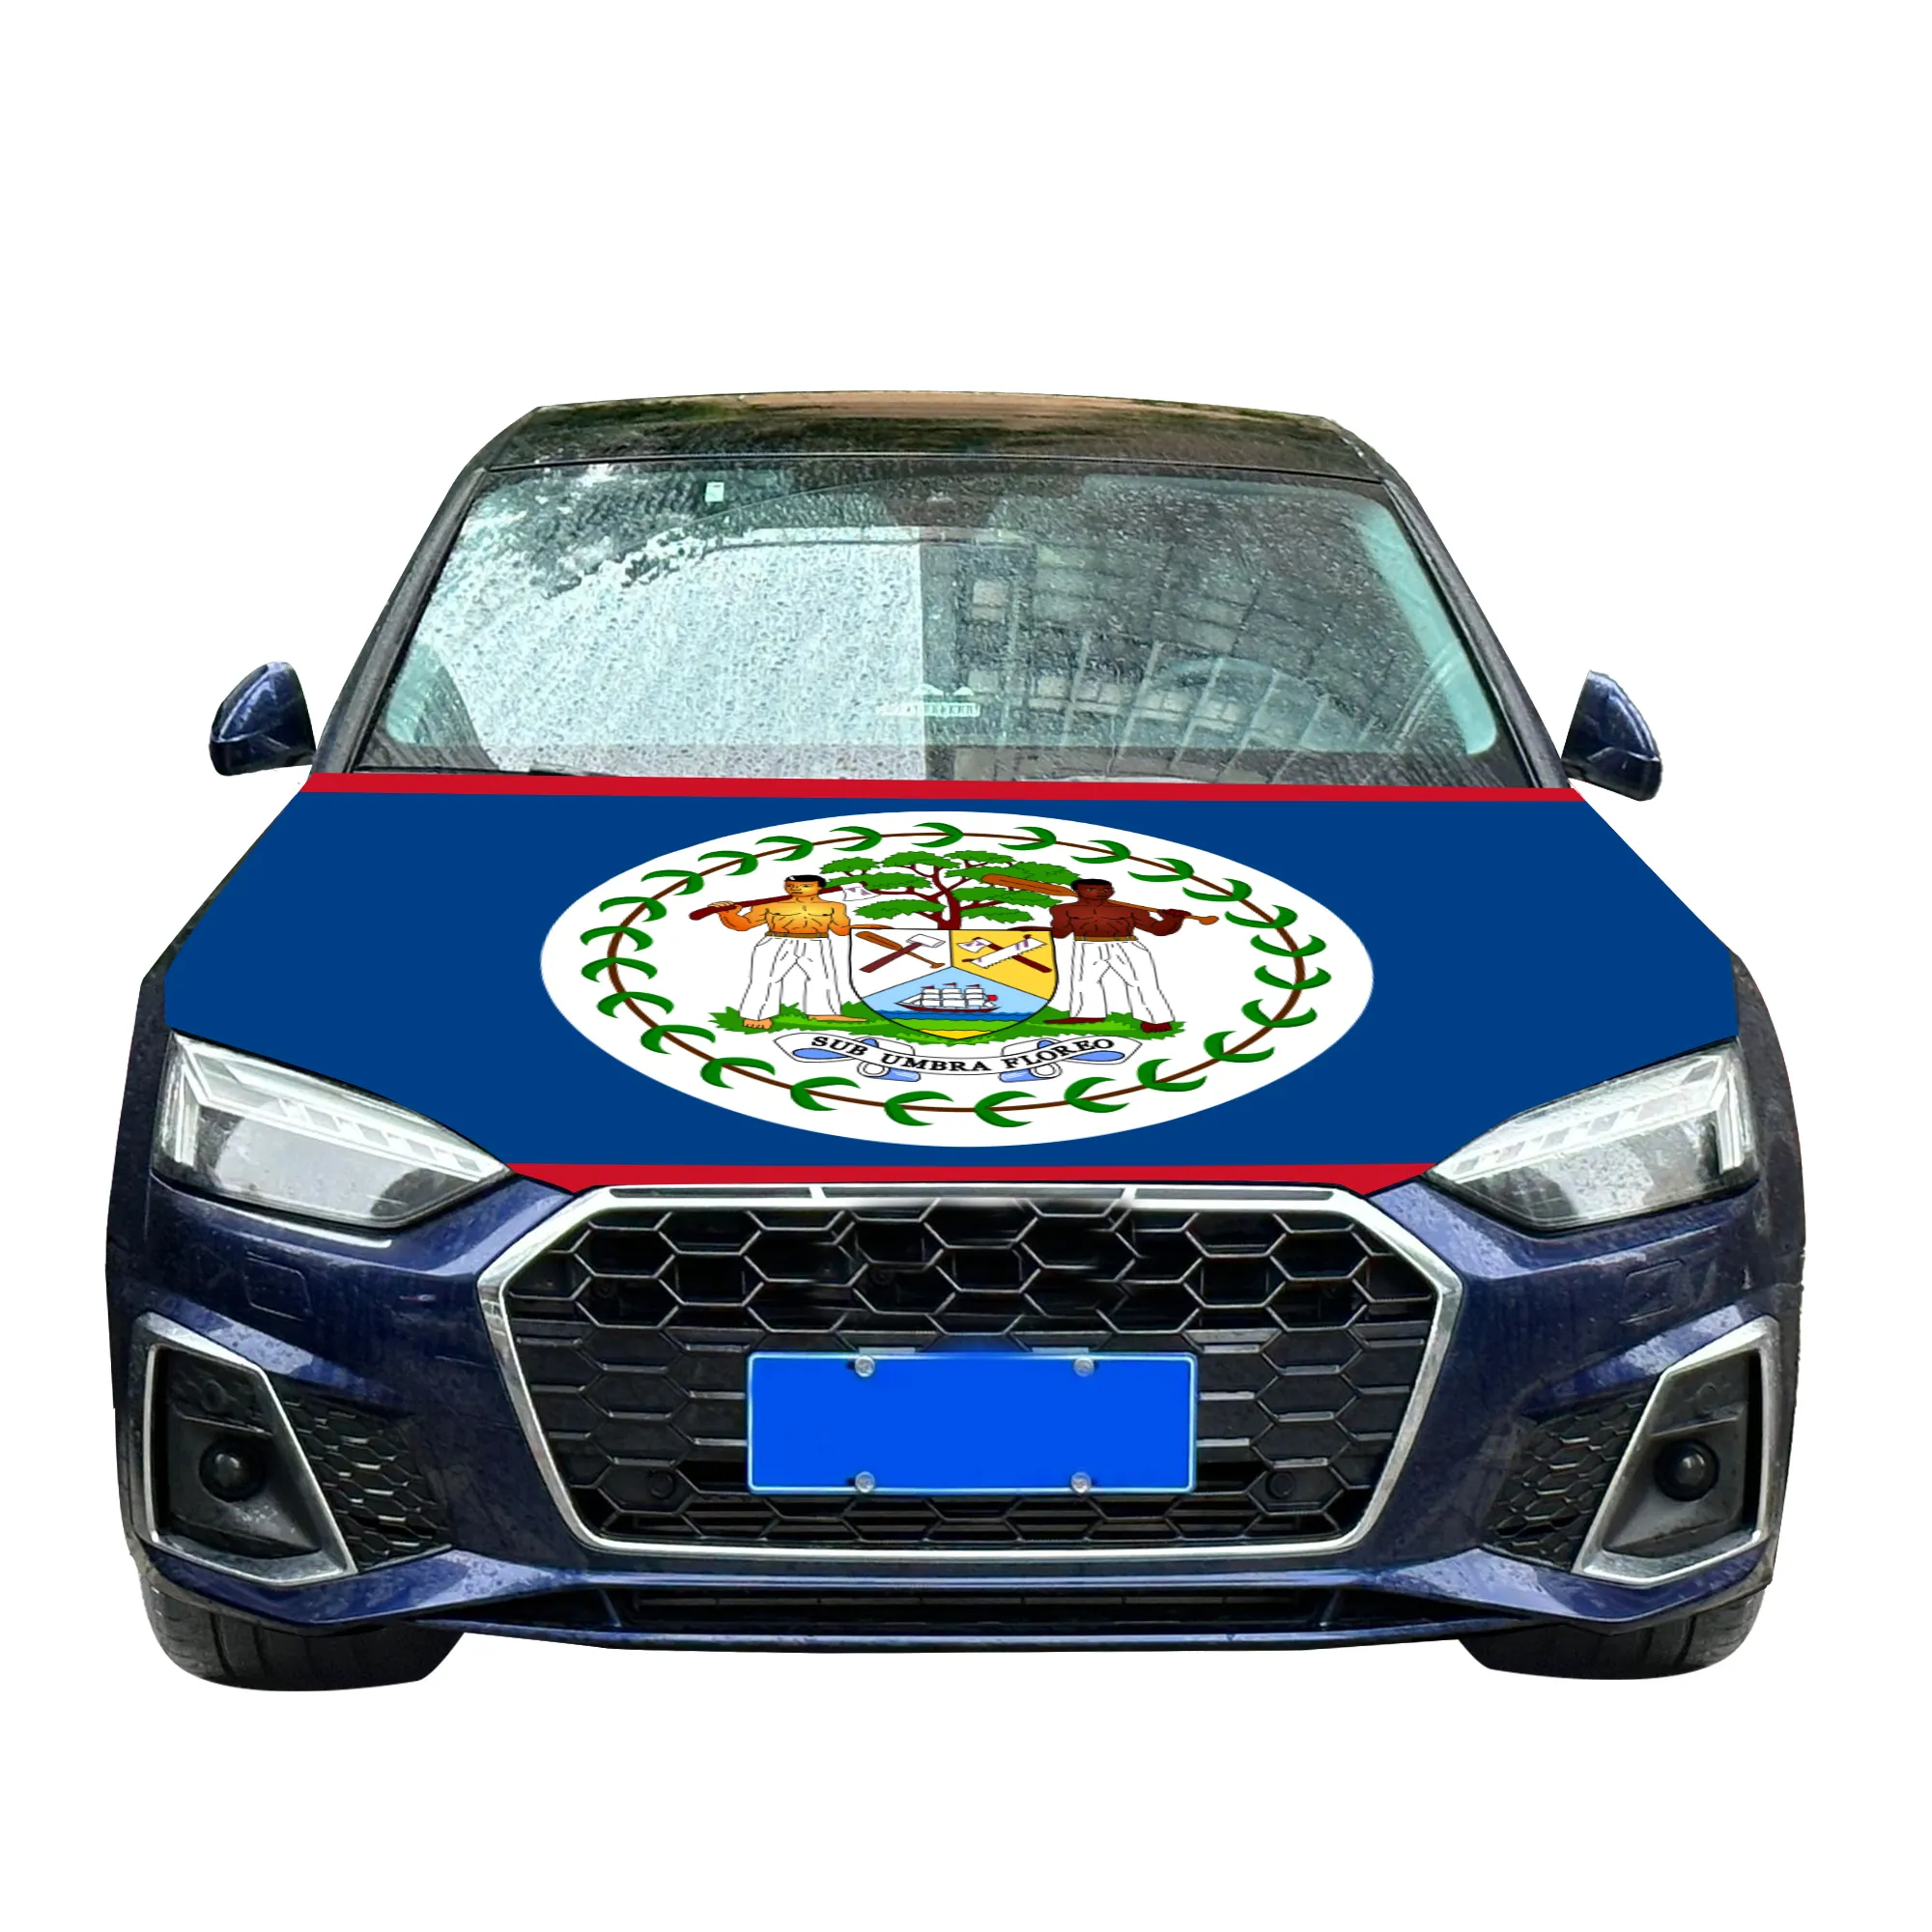 Bandiera nazionale del cofano dell'auto con bandiera della copertura del motore dell'auto con effetto di stampa a trasferimento termico tessuto elastico di dimensioni personalizzate